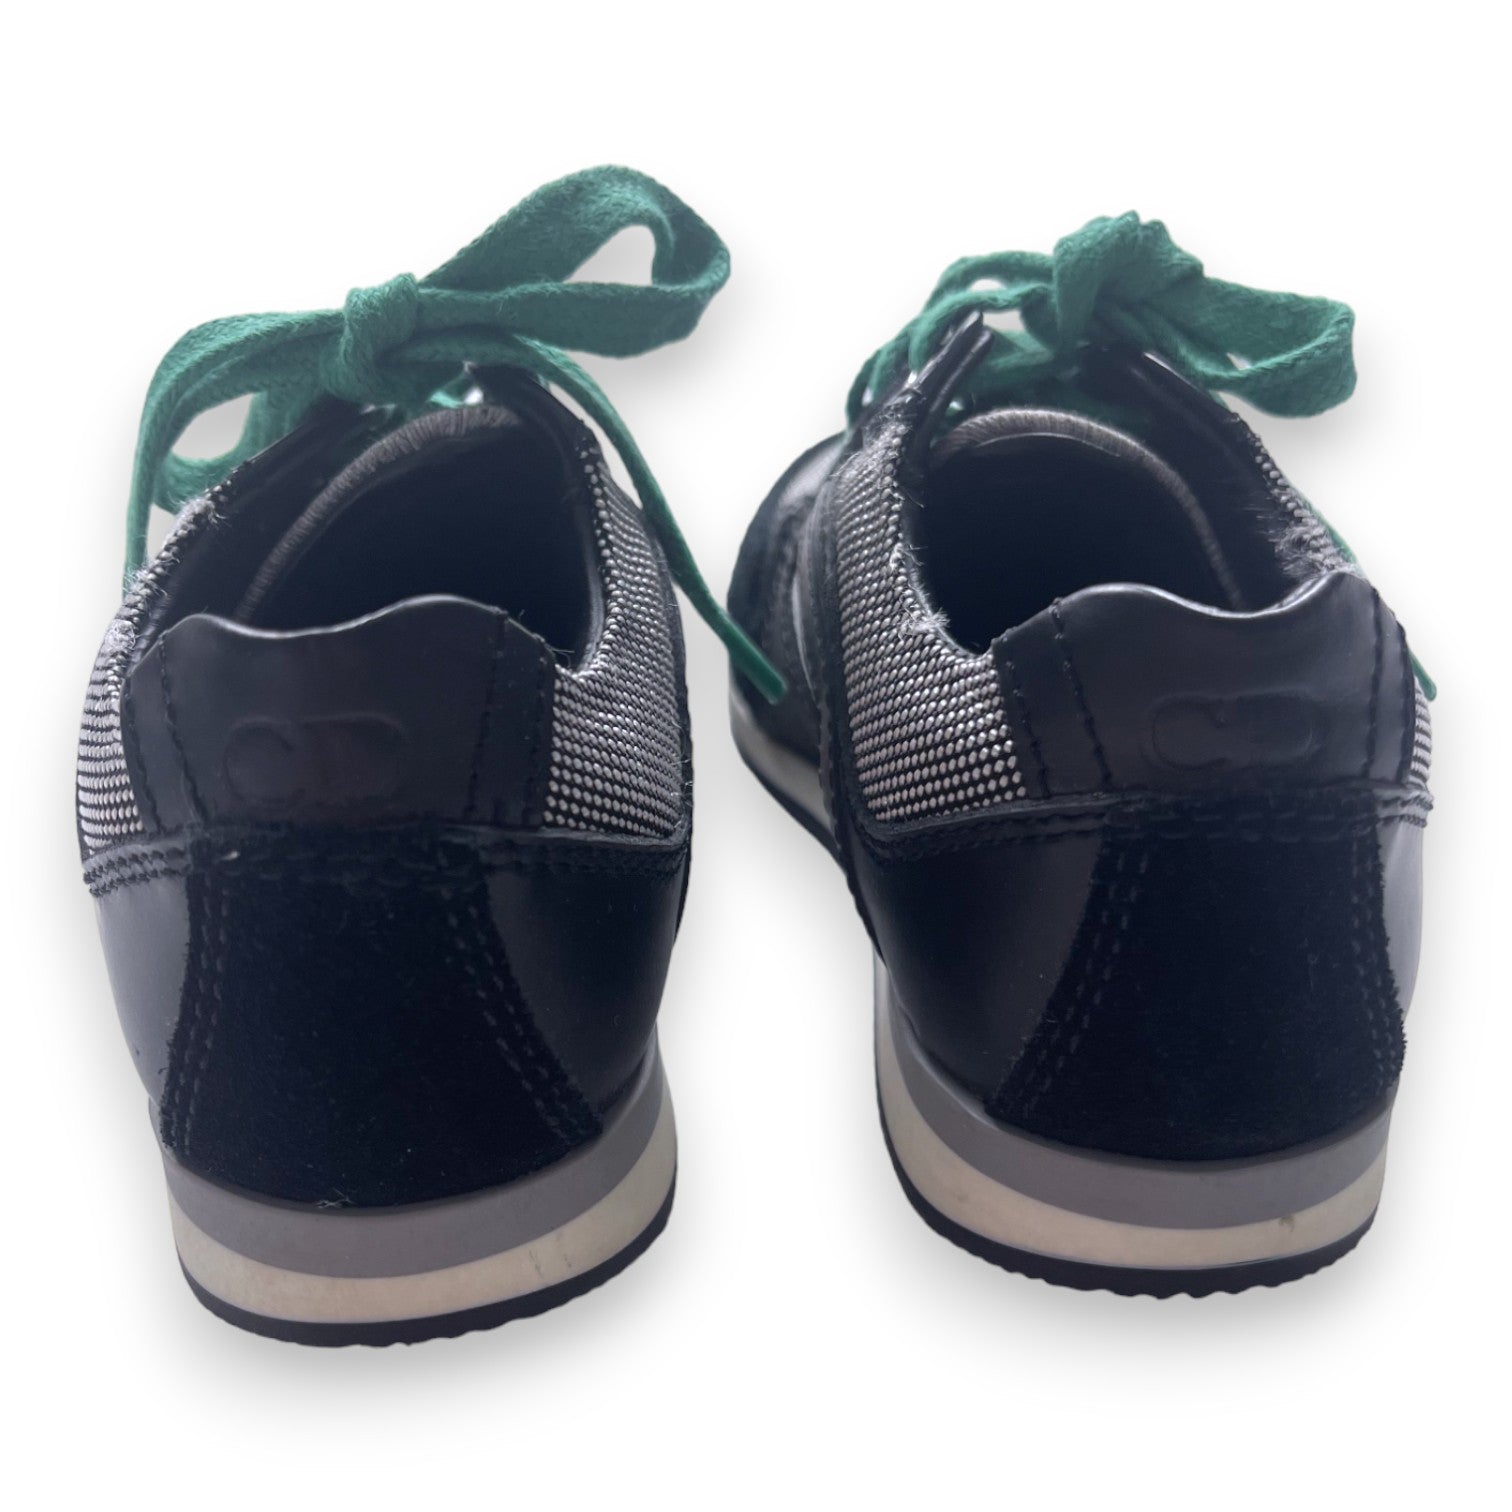 DIOR - Baskets noires à lacets verts - 24